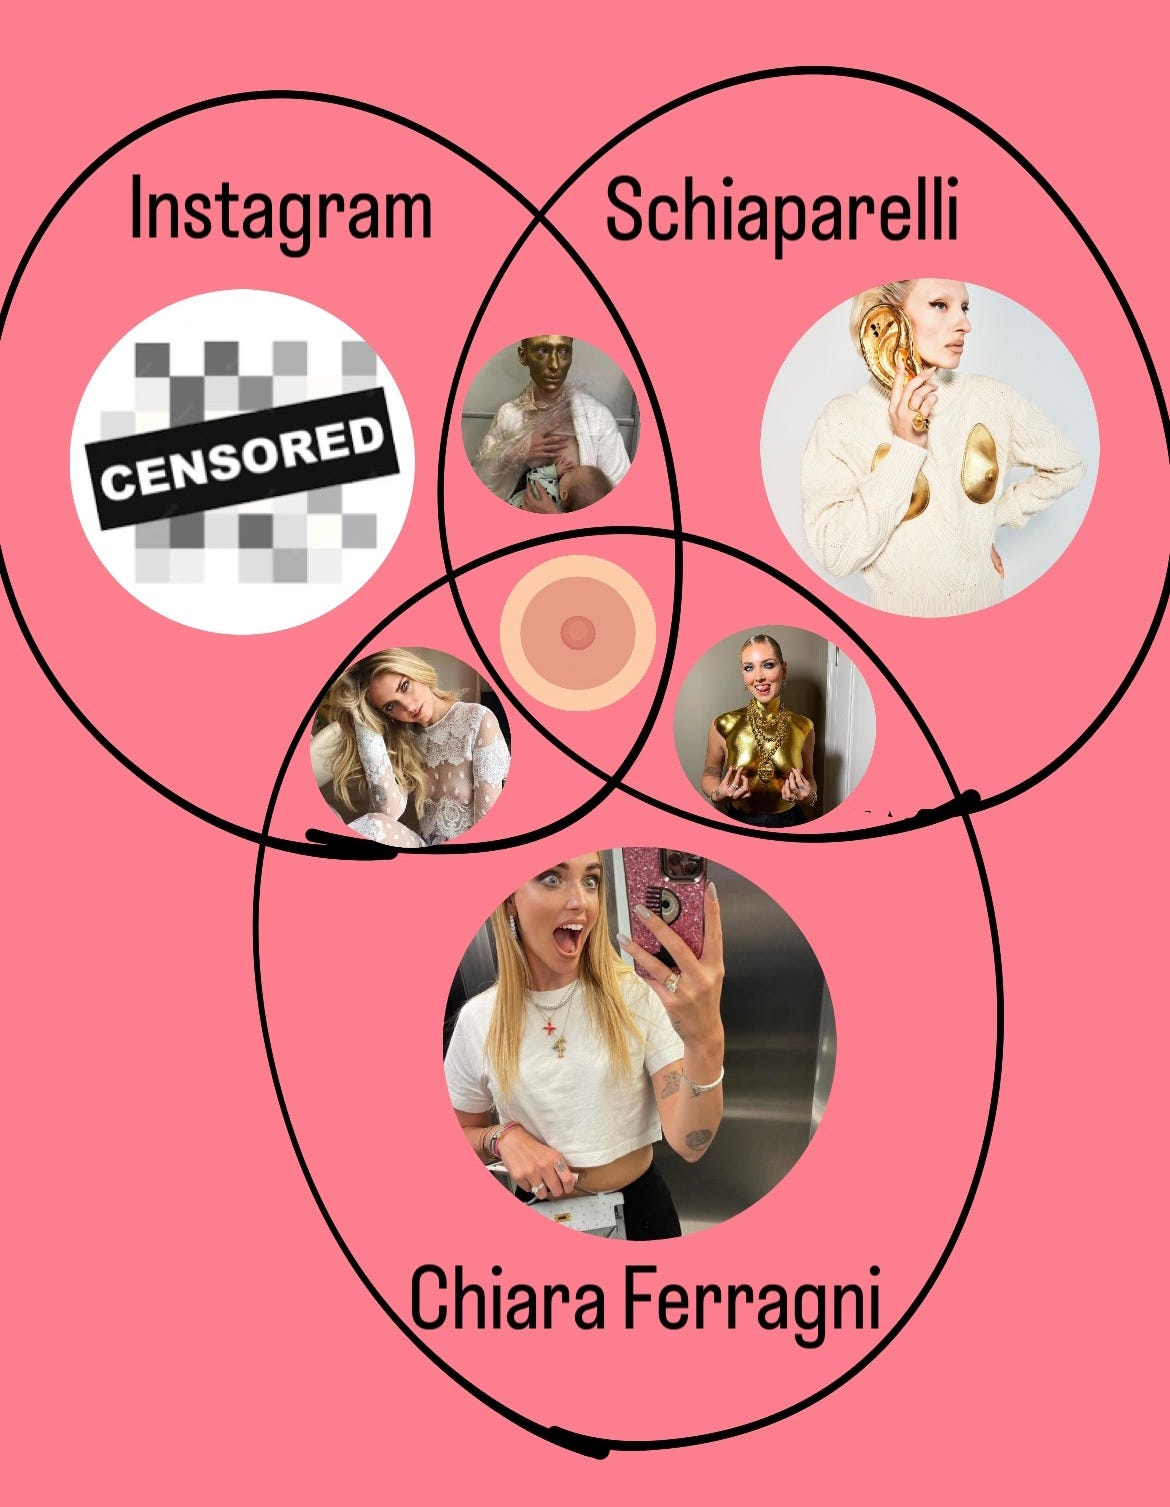 nell'immagine ci sono tre insiemi: uno si chiama Instagram, l'altro Schiaparelli, l'ultimo Chiara Ferragni. Nel punto di congiunzione c'è un capezzolo